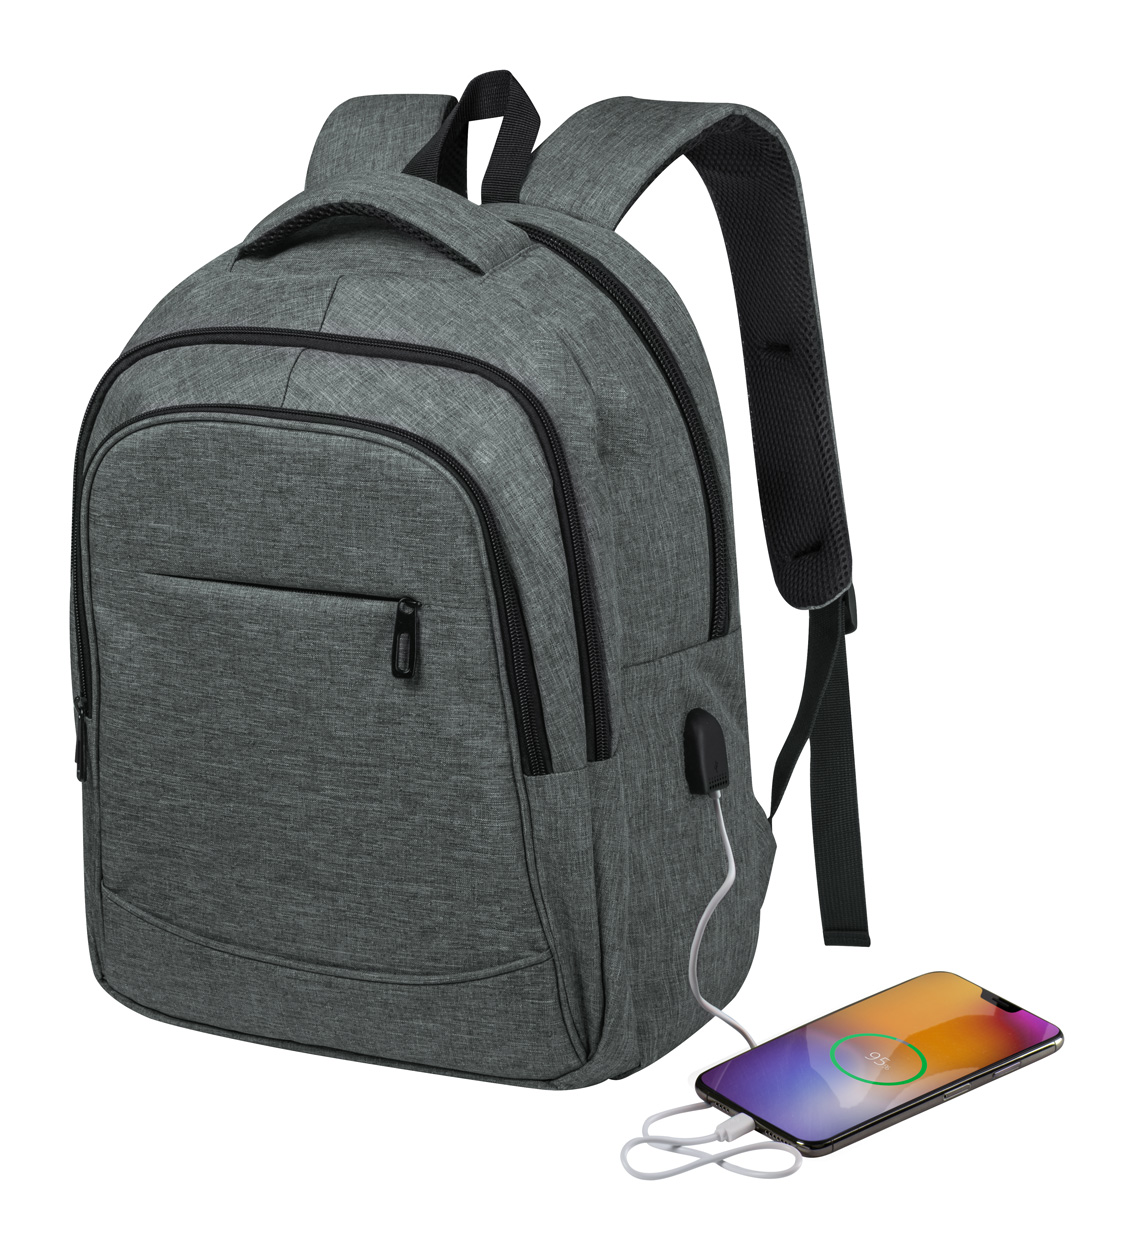 Kacen backpack